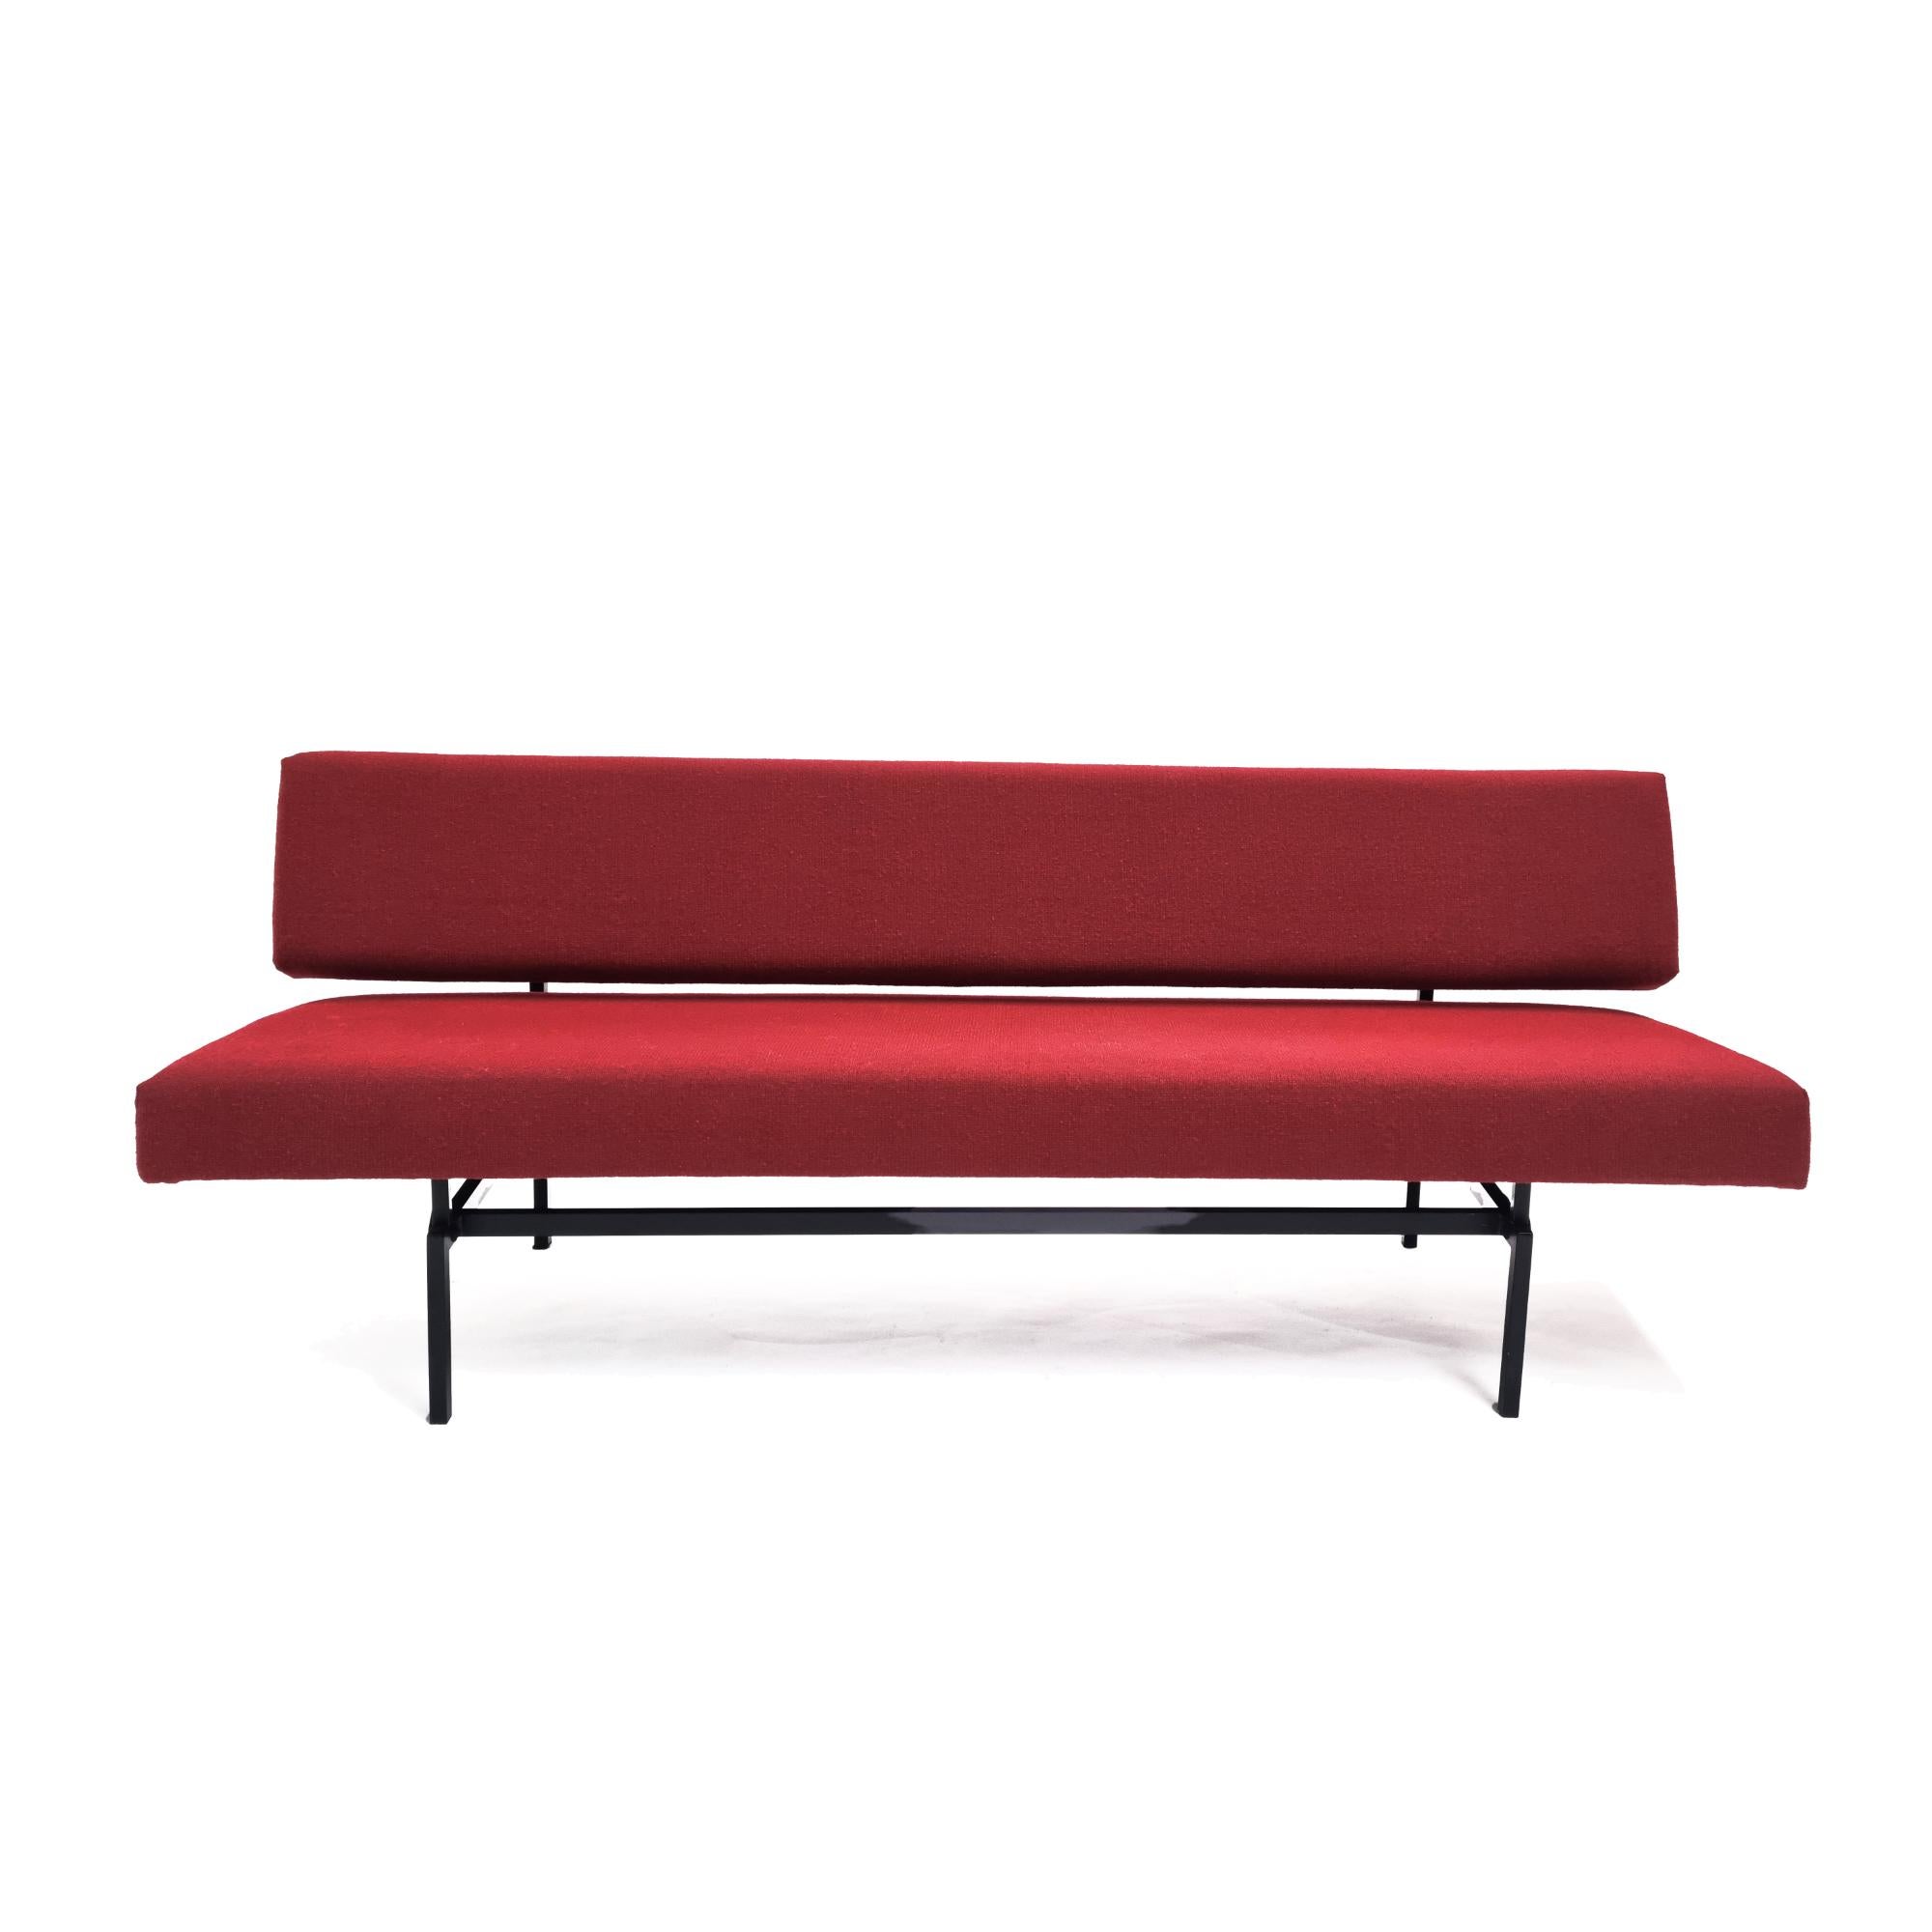 Canapé-lit, conçu par le célèbre Martin Visser dans les années 60. Fabriqué par 't Spectrum, Pays-Bas. Structure simple en métal de haute qualité avec un confort maximum. Le canapé peut être transformé en lit (de jour) en quelques secondes grâce à